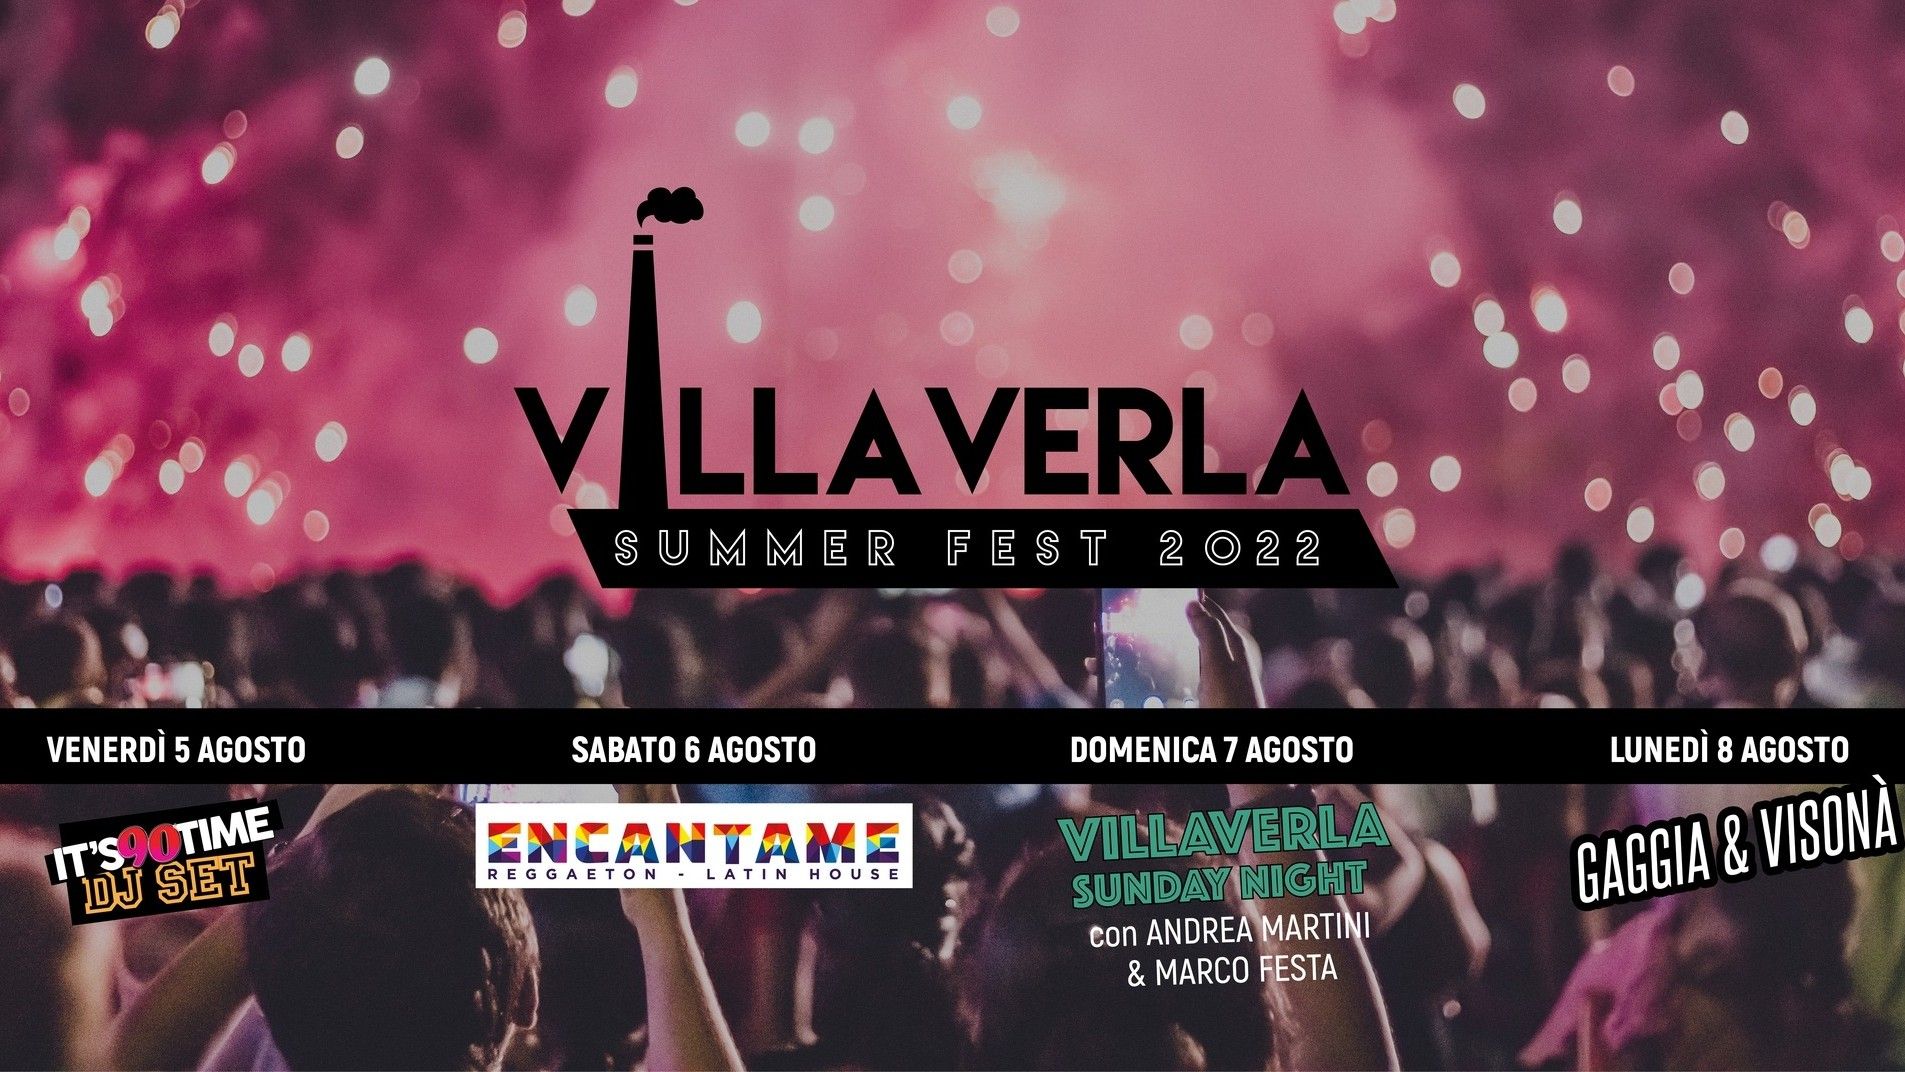 Villaverla Summer Fest 2022